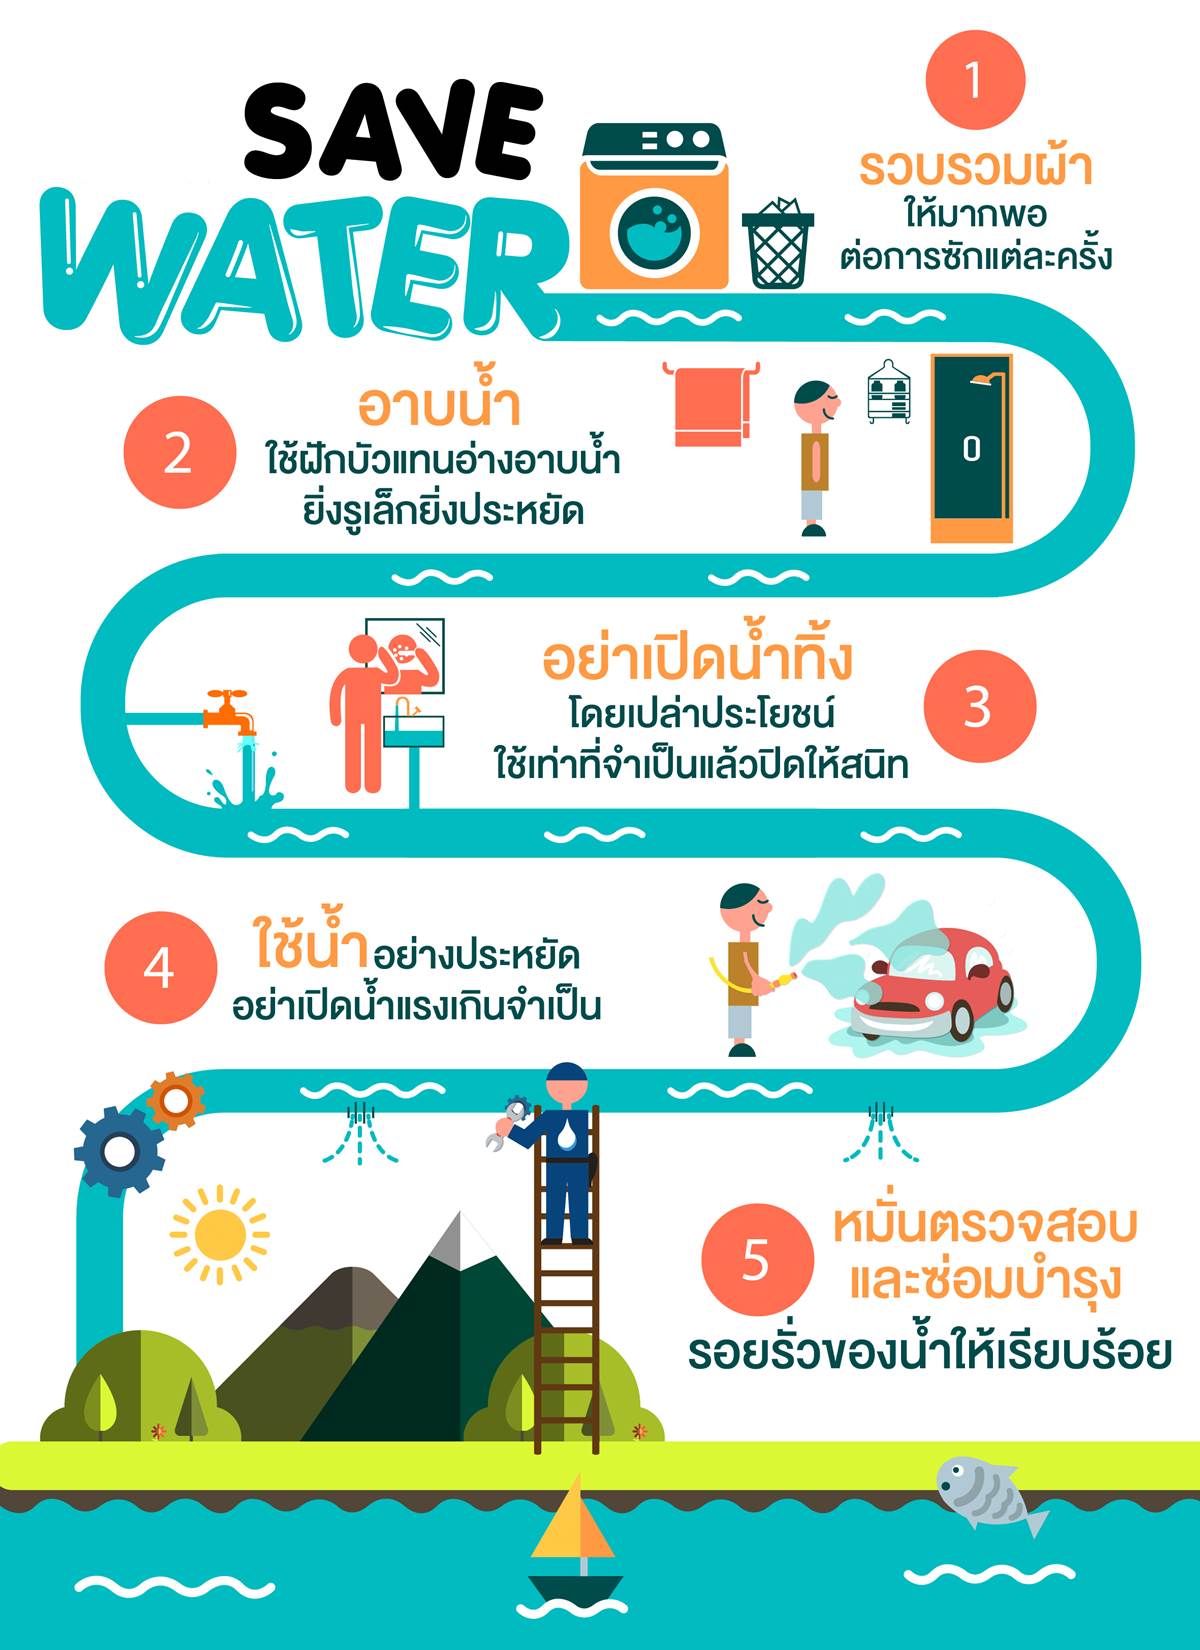 ร่วมด้วยช่วยไทย ร่วมใจประหยัดการใช้น้ำ